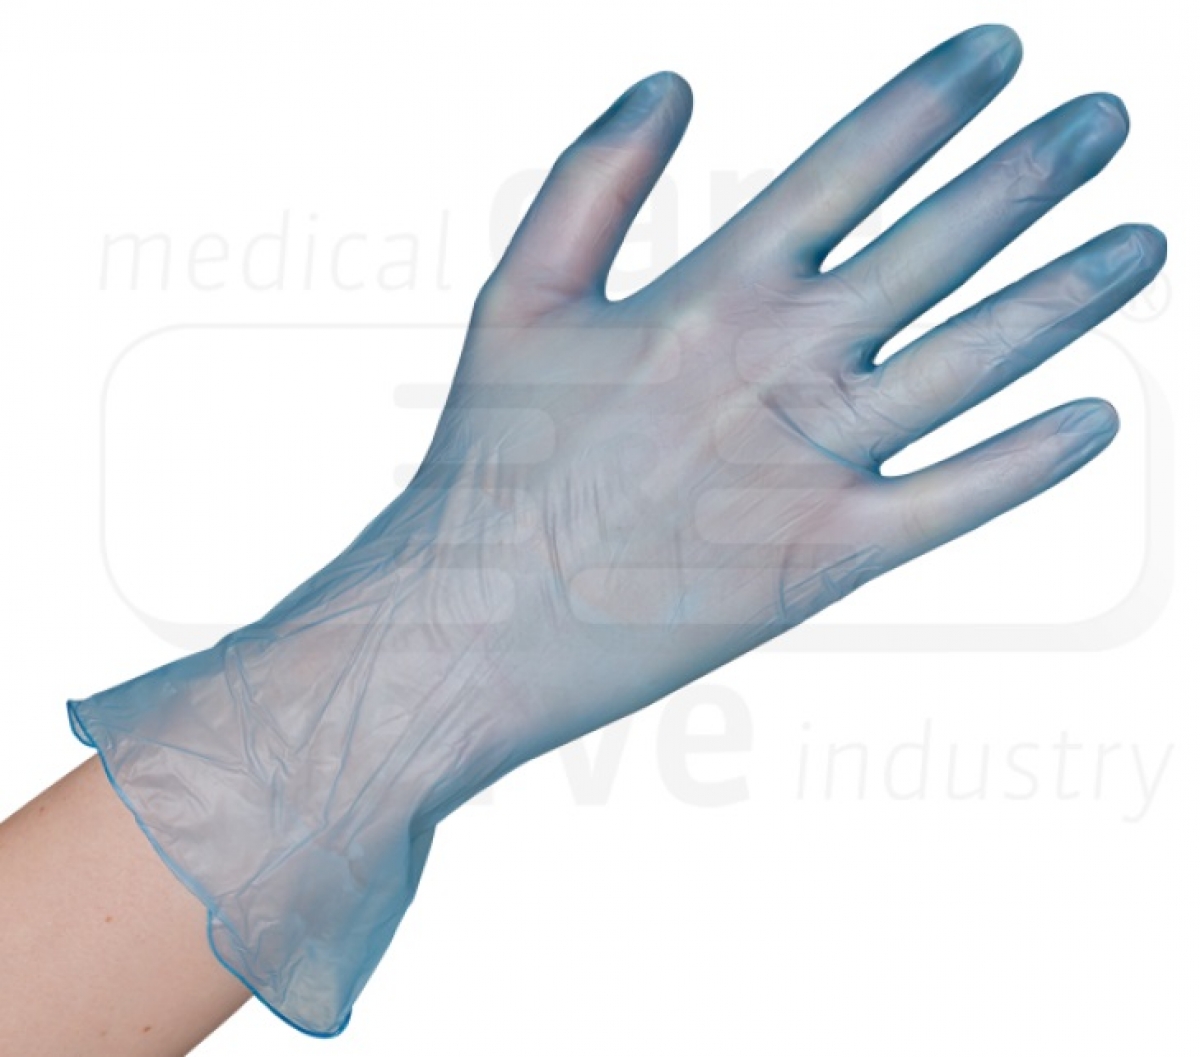 WIROS-Hand-Schutz, Einweg-Vinyl Handschuhe, puderfrei, Spenderbox, blau, Pkg  100 Stck, VE = 10 Pkg.